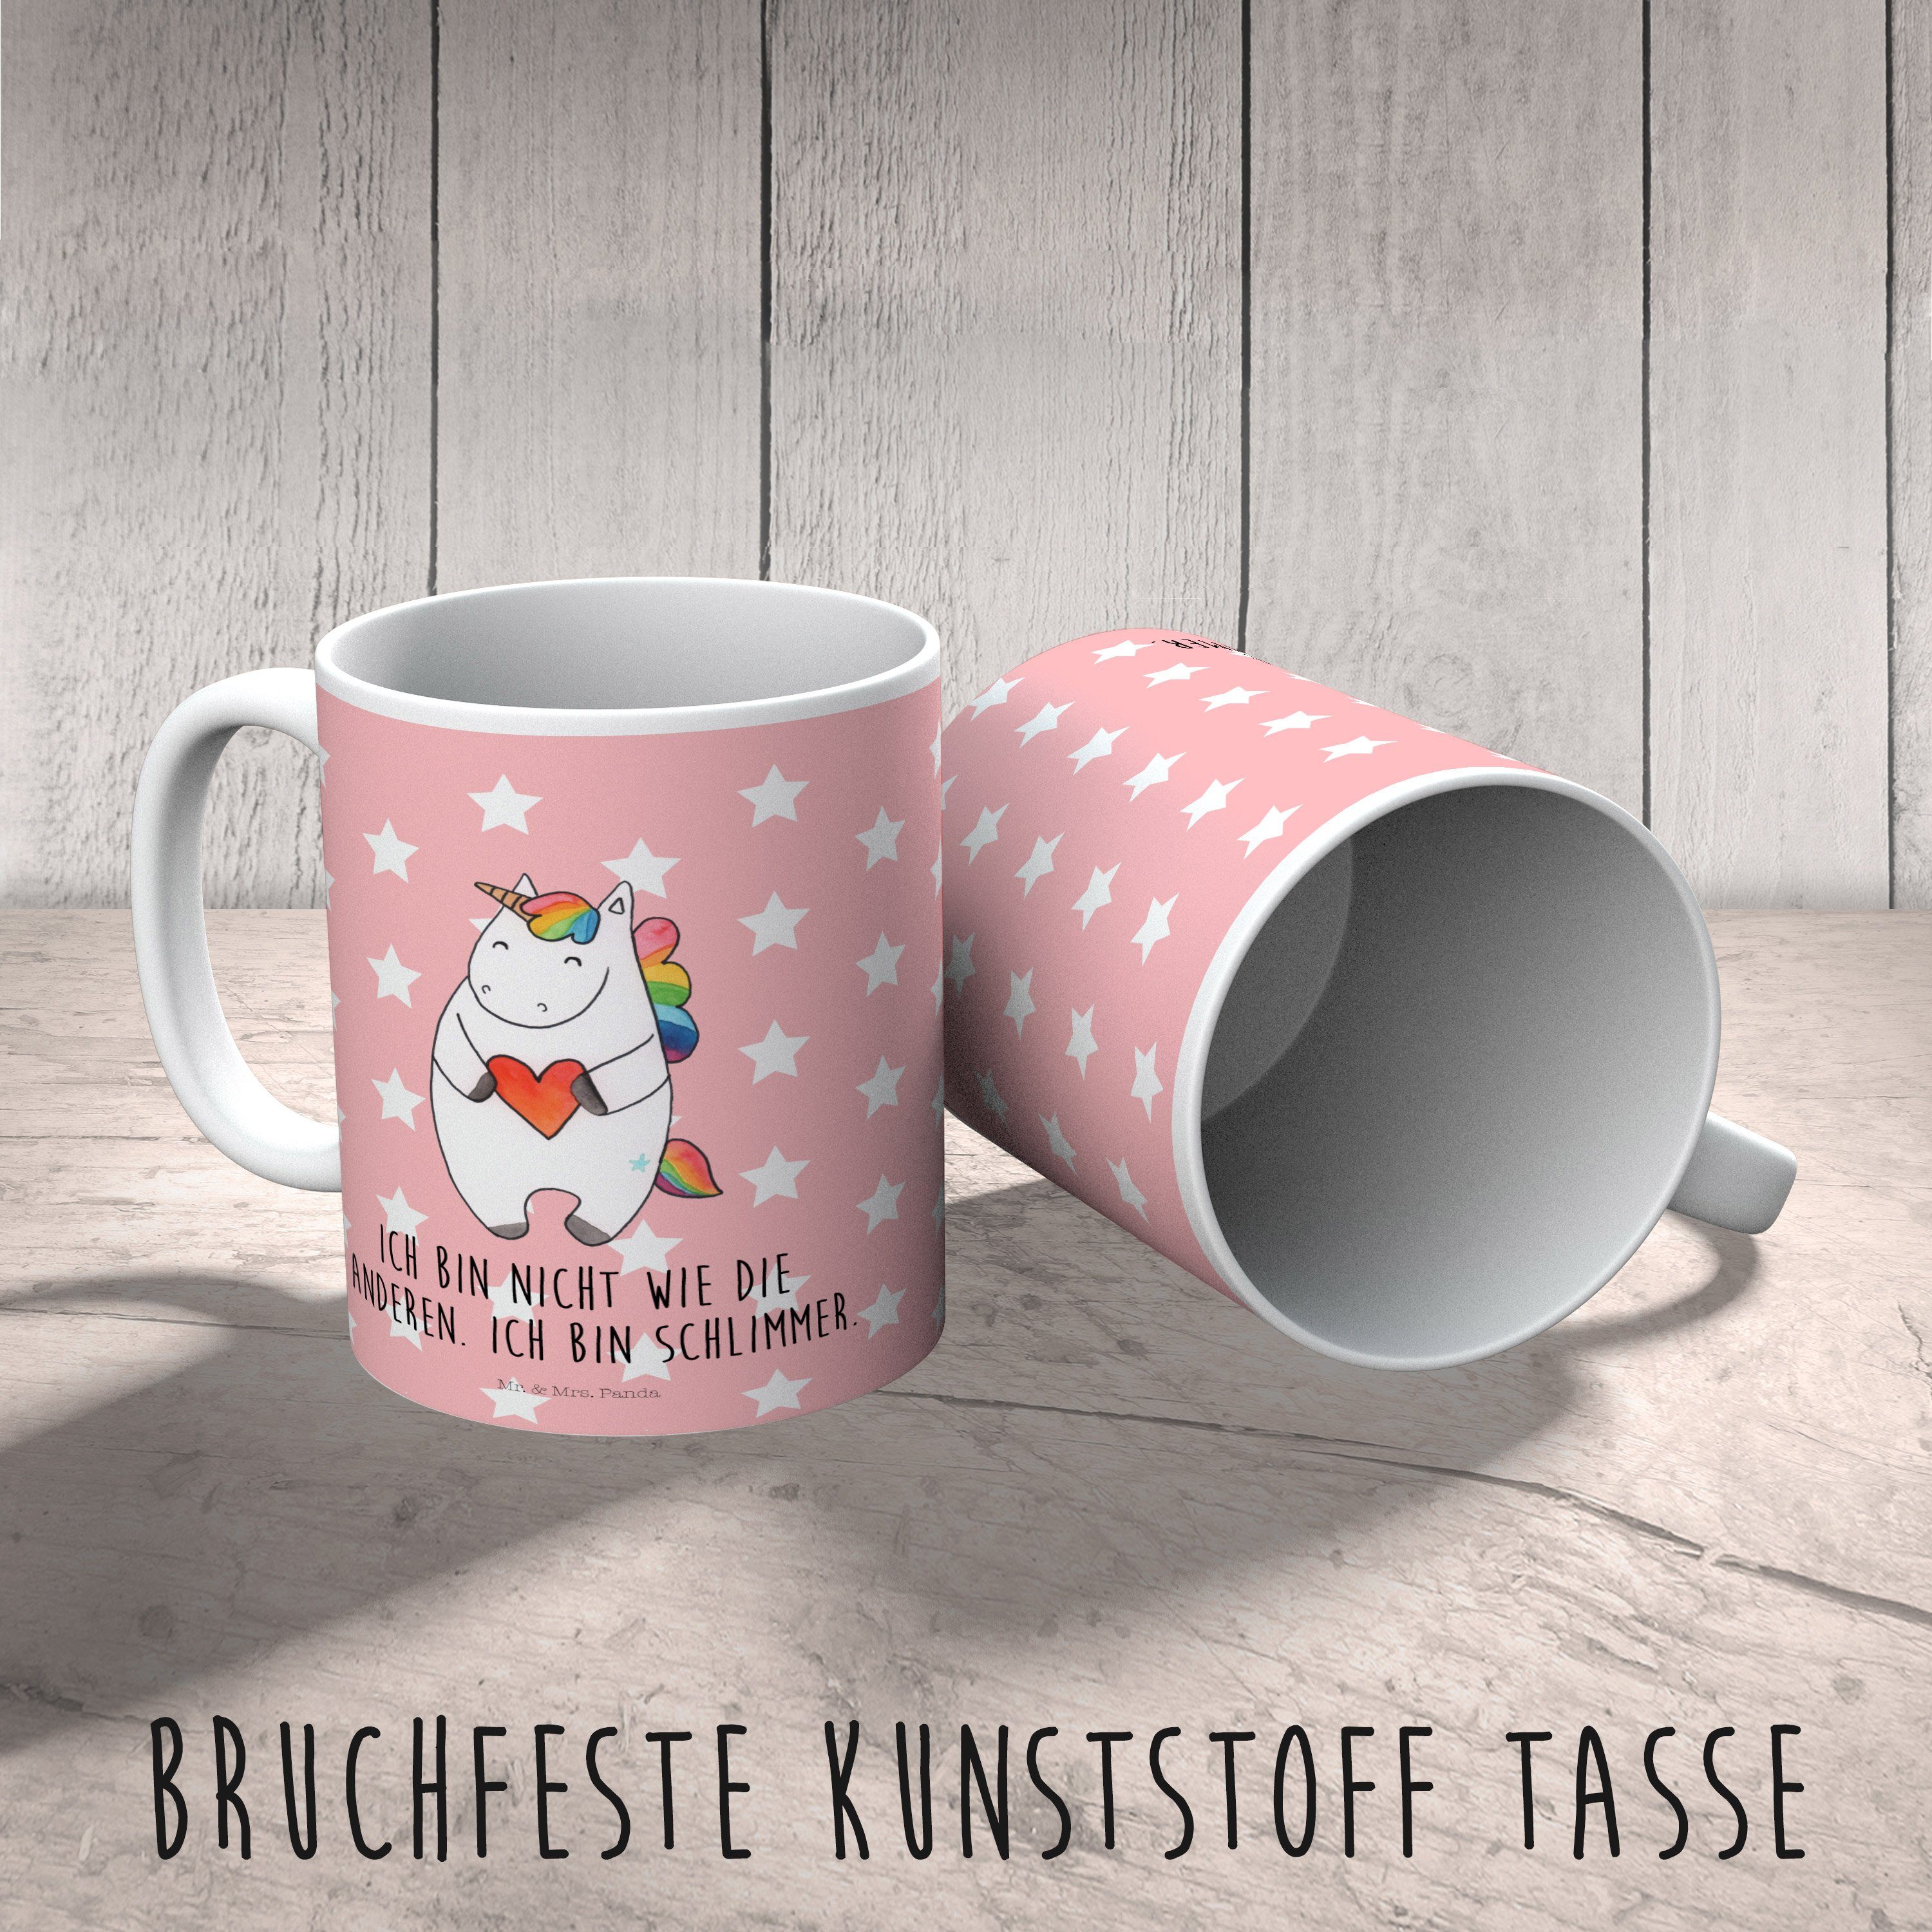 Mr. & Mrs. Panda Kinderbecher Tasse, Unicorn, Rot - Herz Pastell Kindergarten, - Kunststoff Geschenk, Einhorn